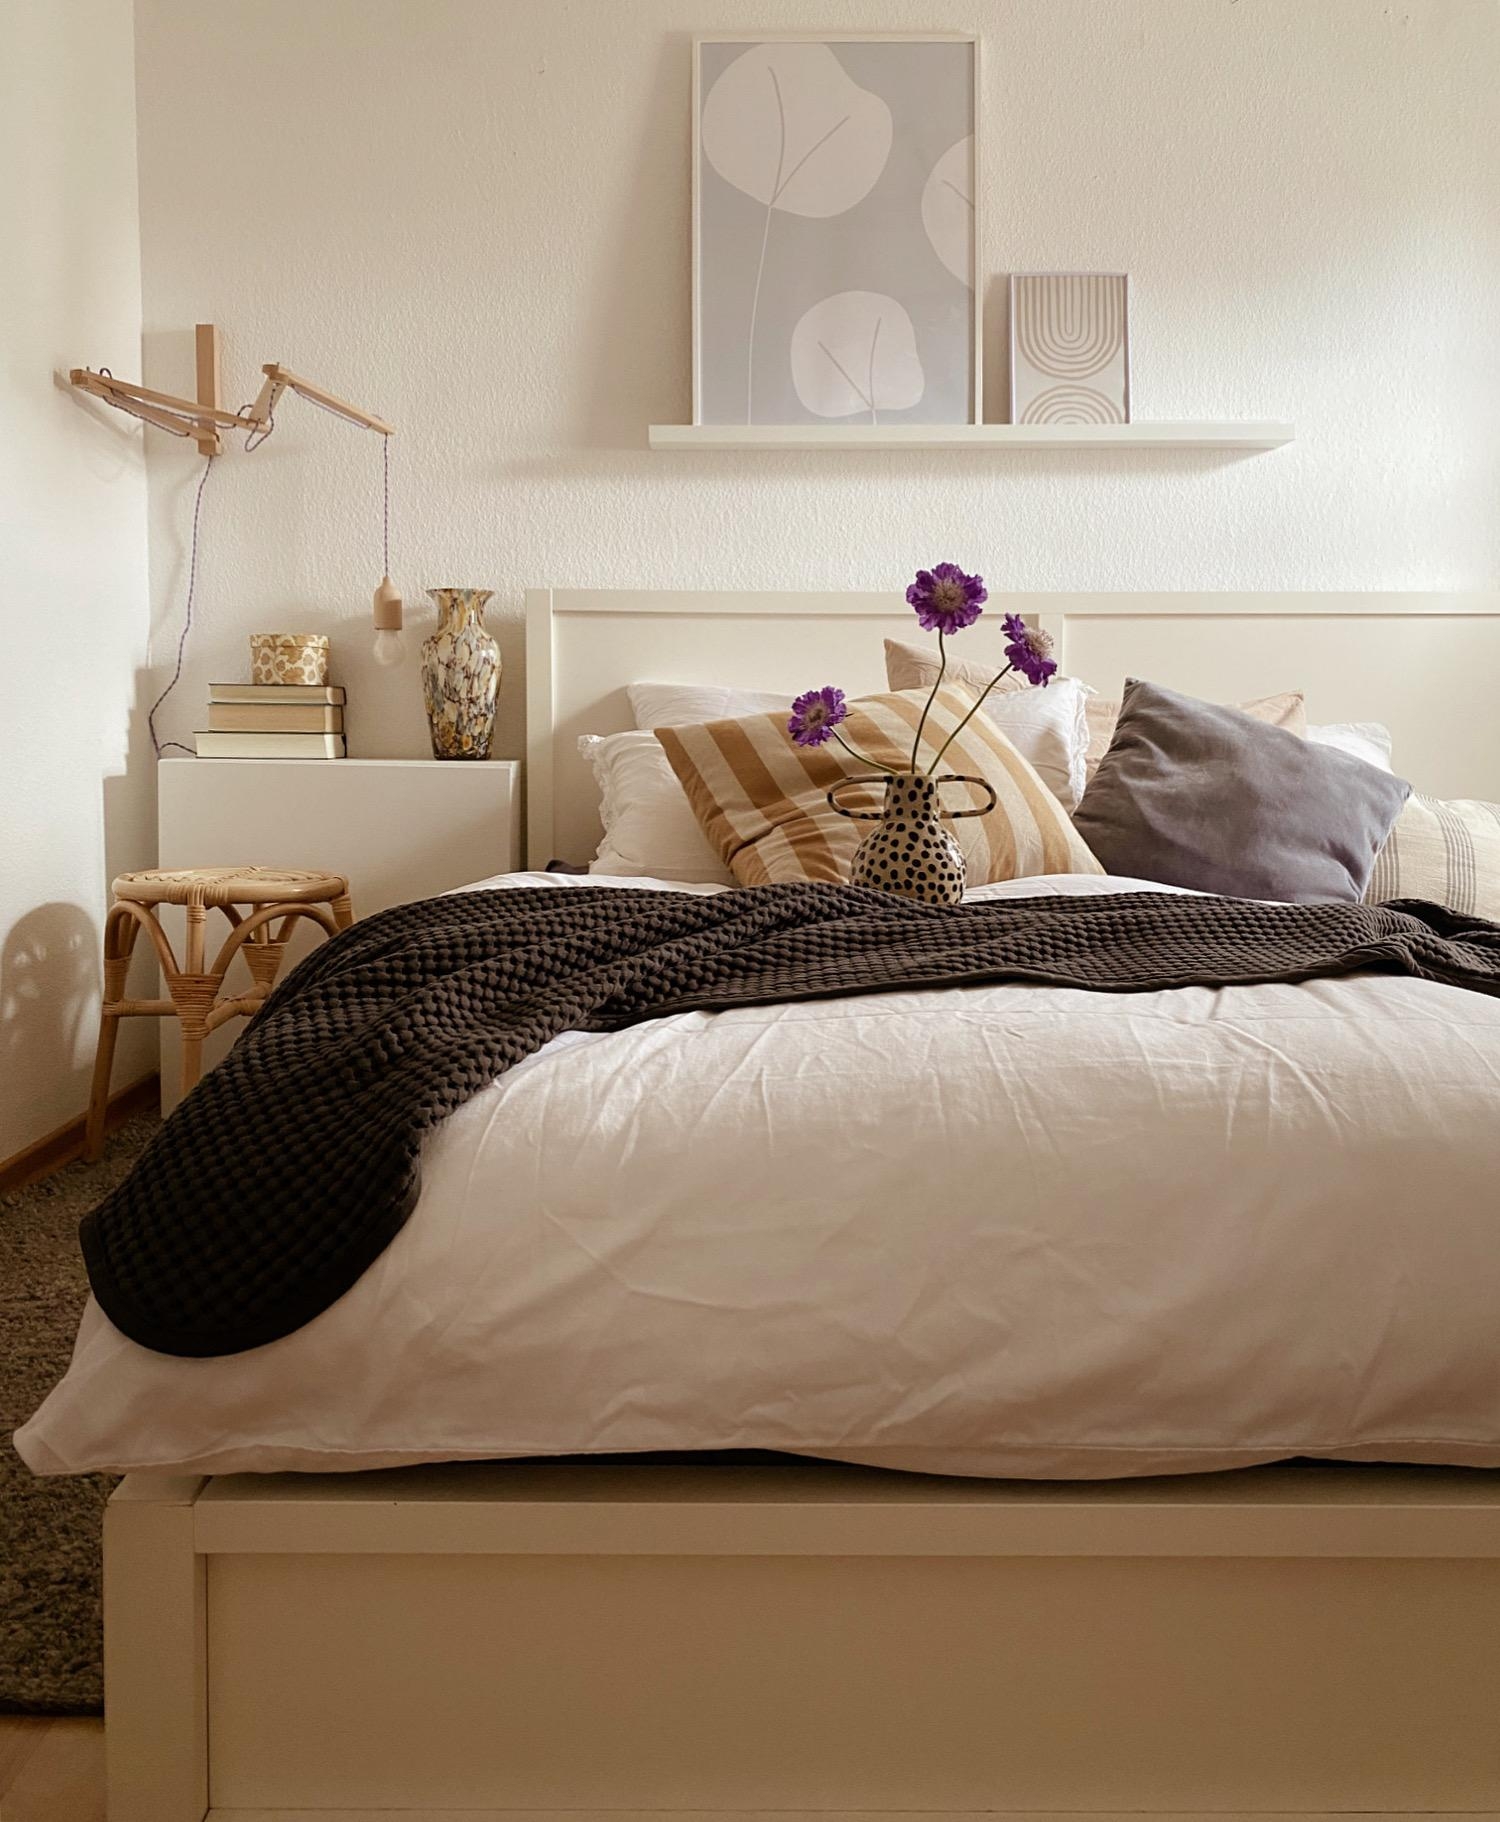 Bedroom 
#cozysundays#schlafzimmer#hygge#bedroominspo#sleepy#scandistyle